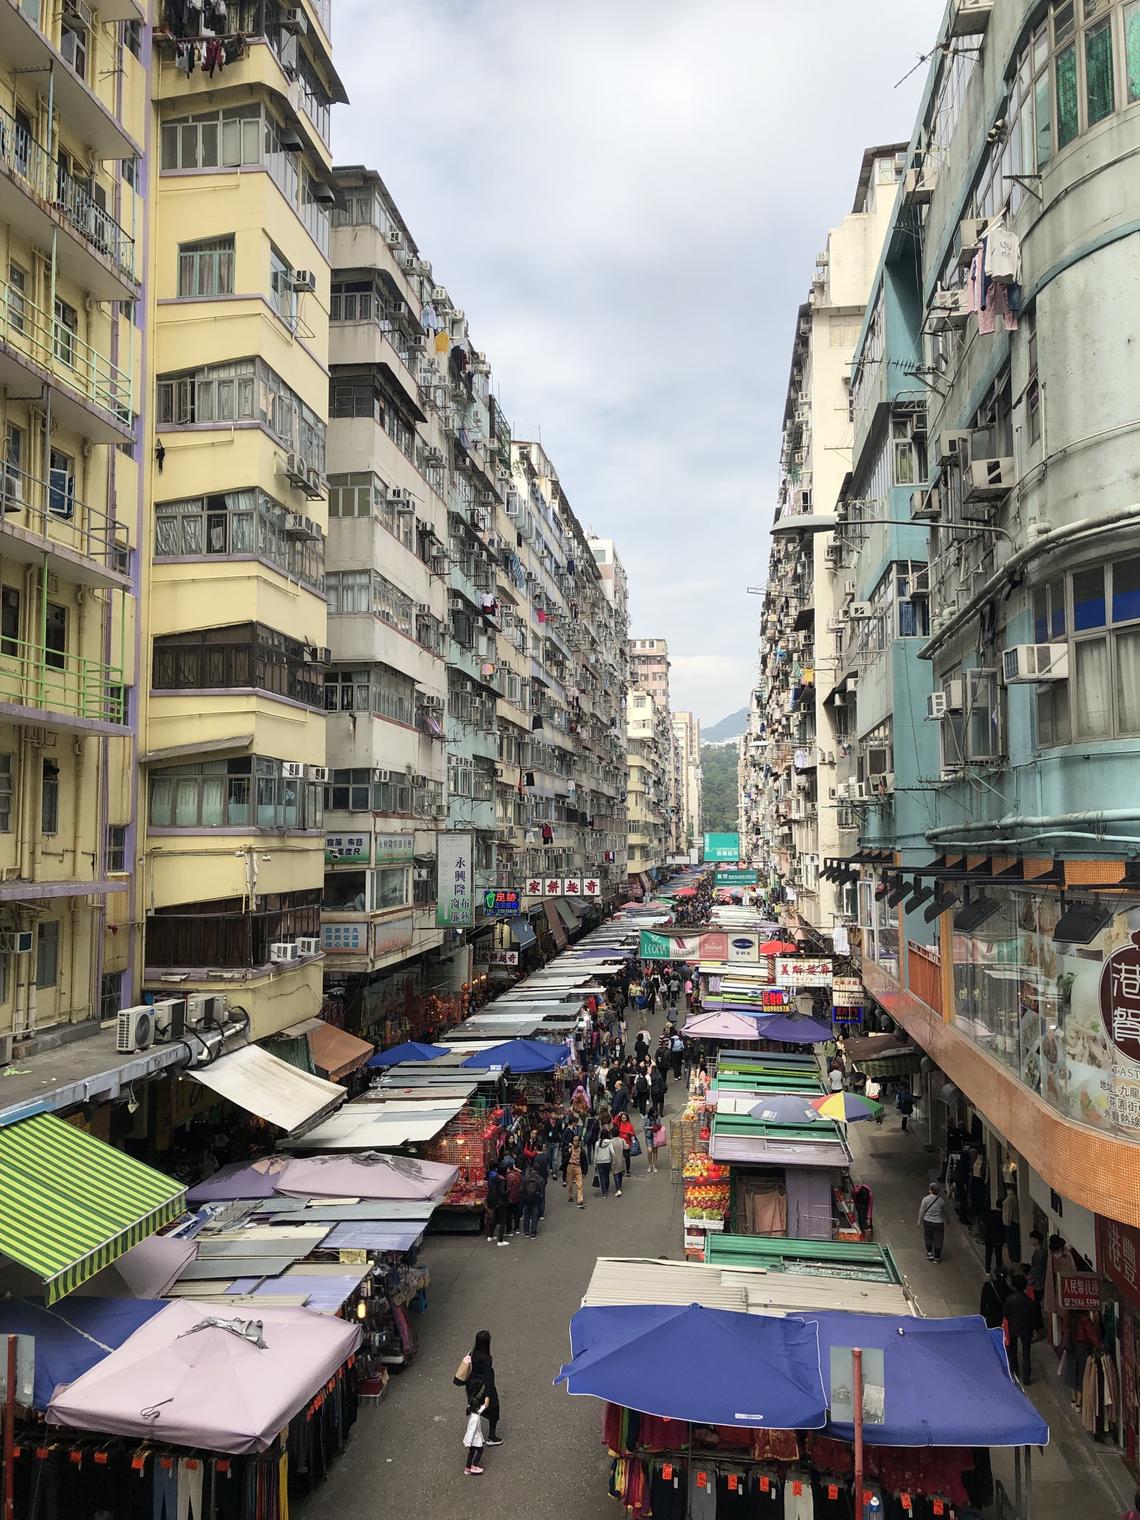 A street market in Hong Kong